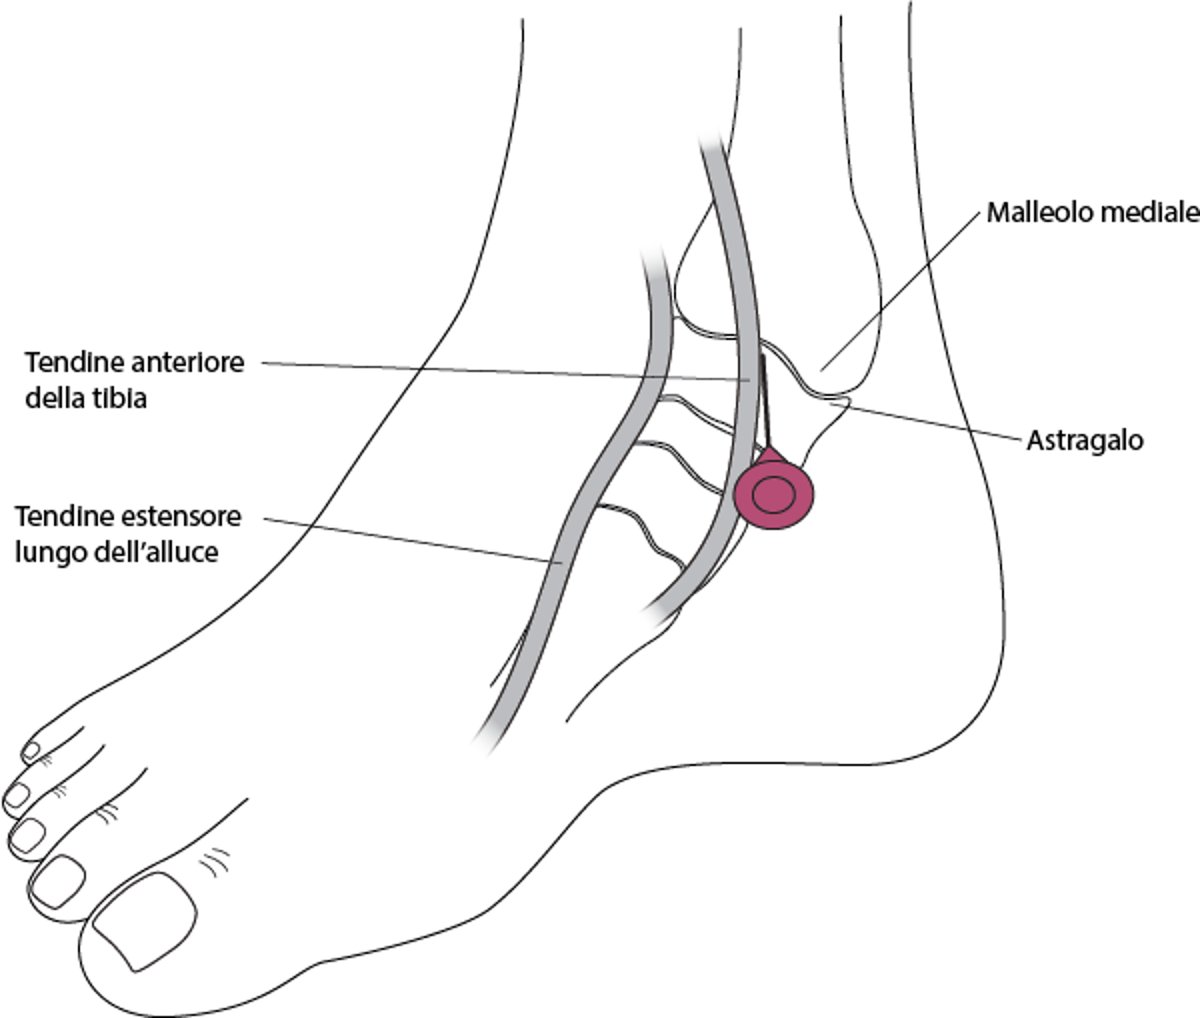 Artrocentesi della caviglia